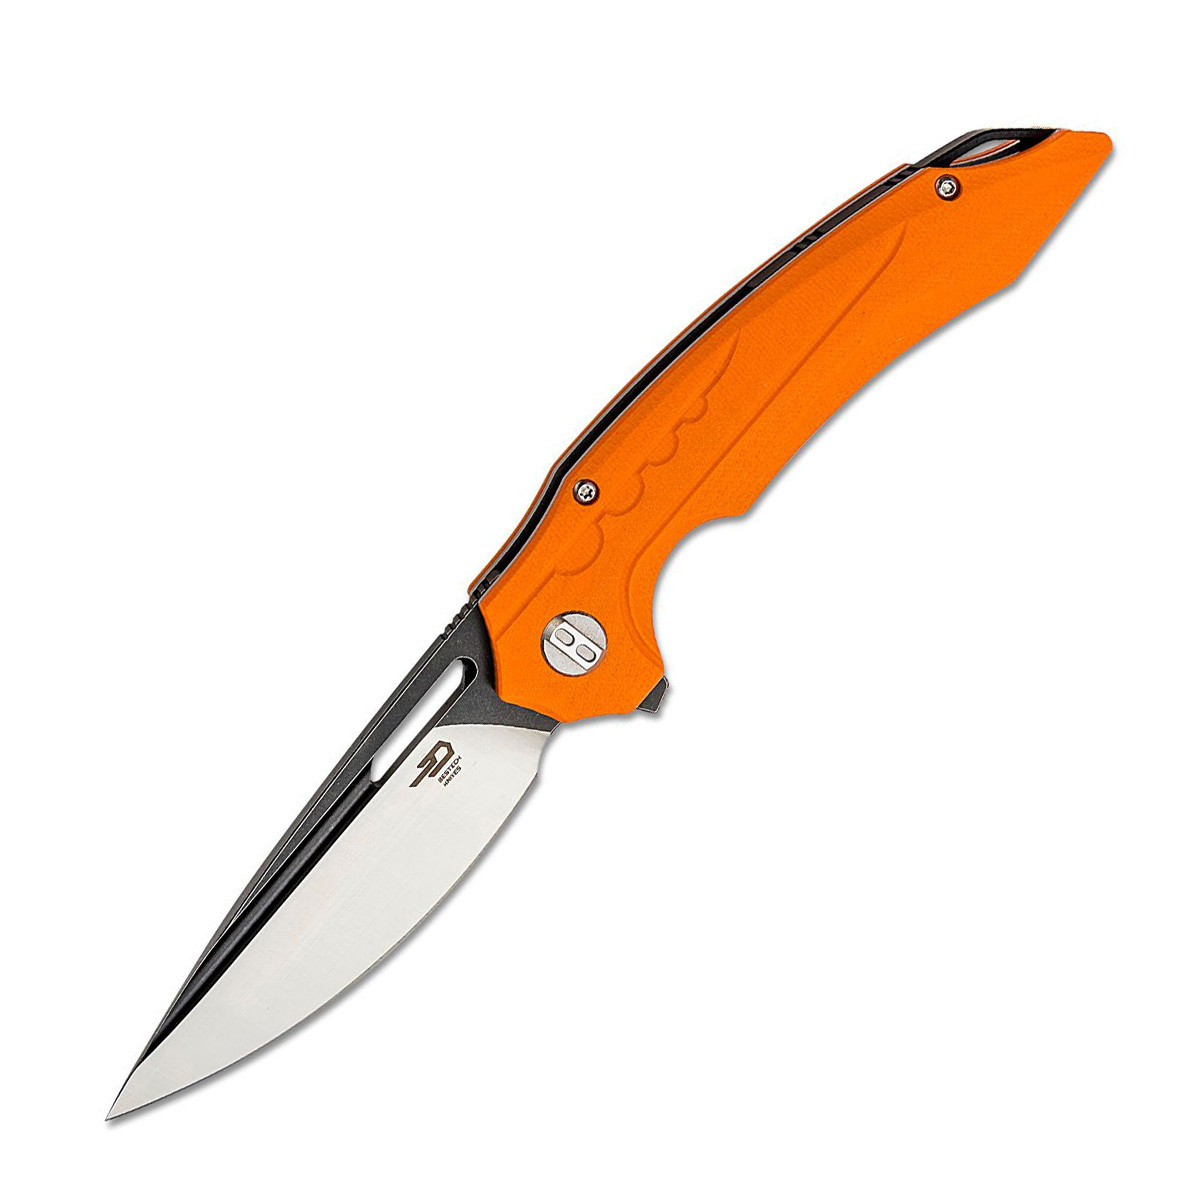 Складной нож Bestech Ornetta, сталь D2, рукоять оранжевая G10 складной нож bestech swift сталь d2 micarta